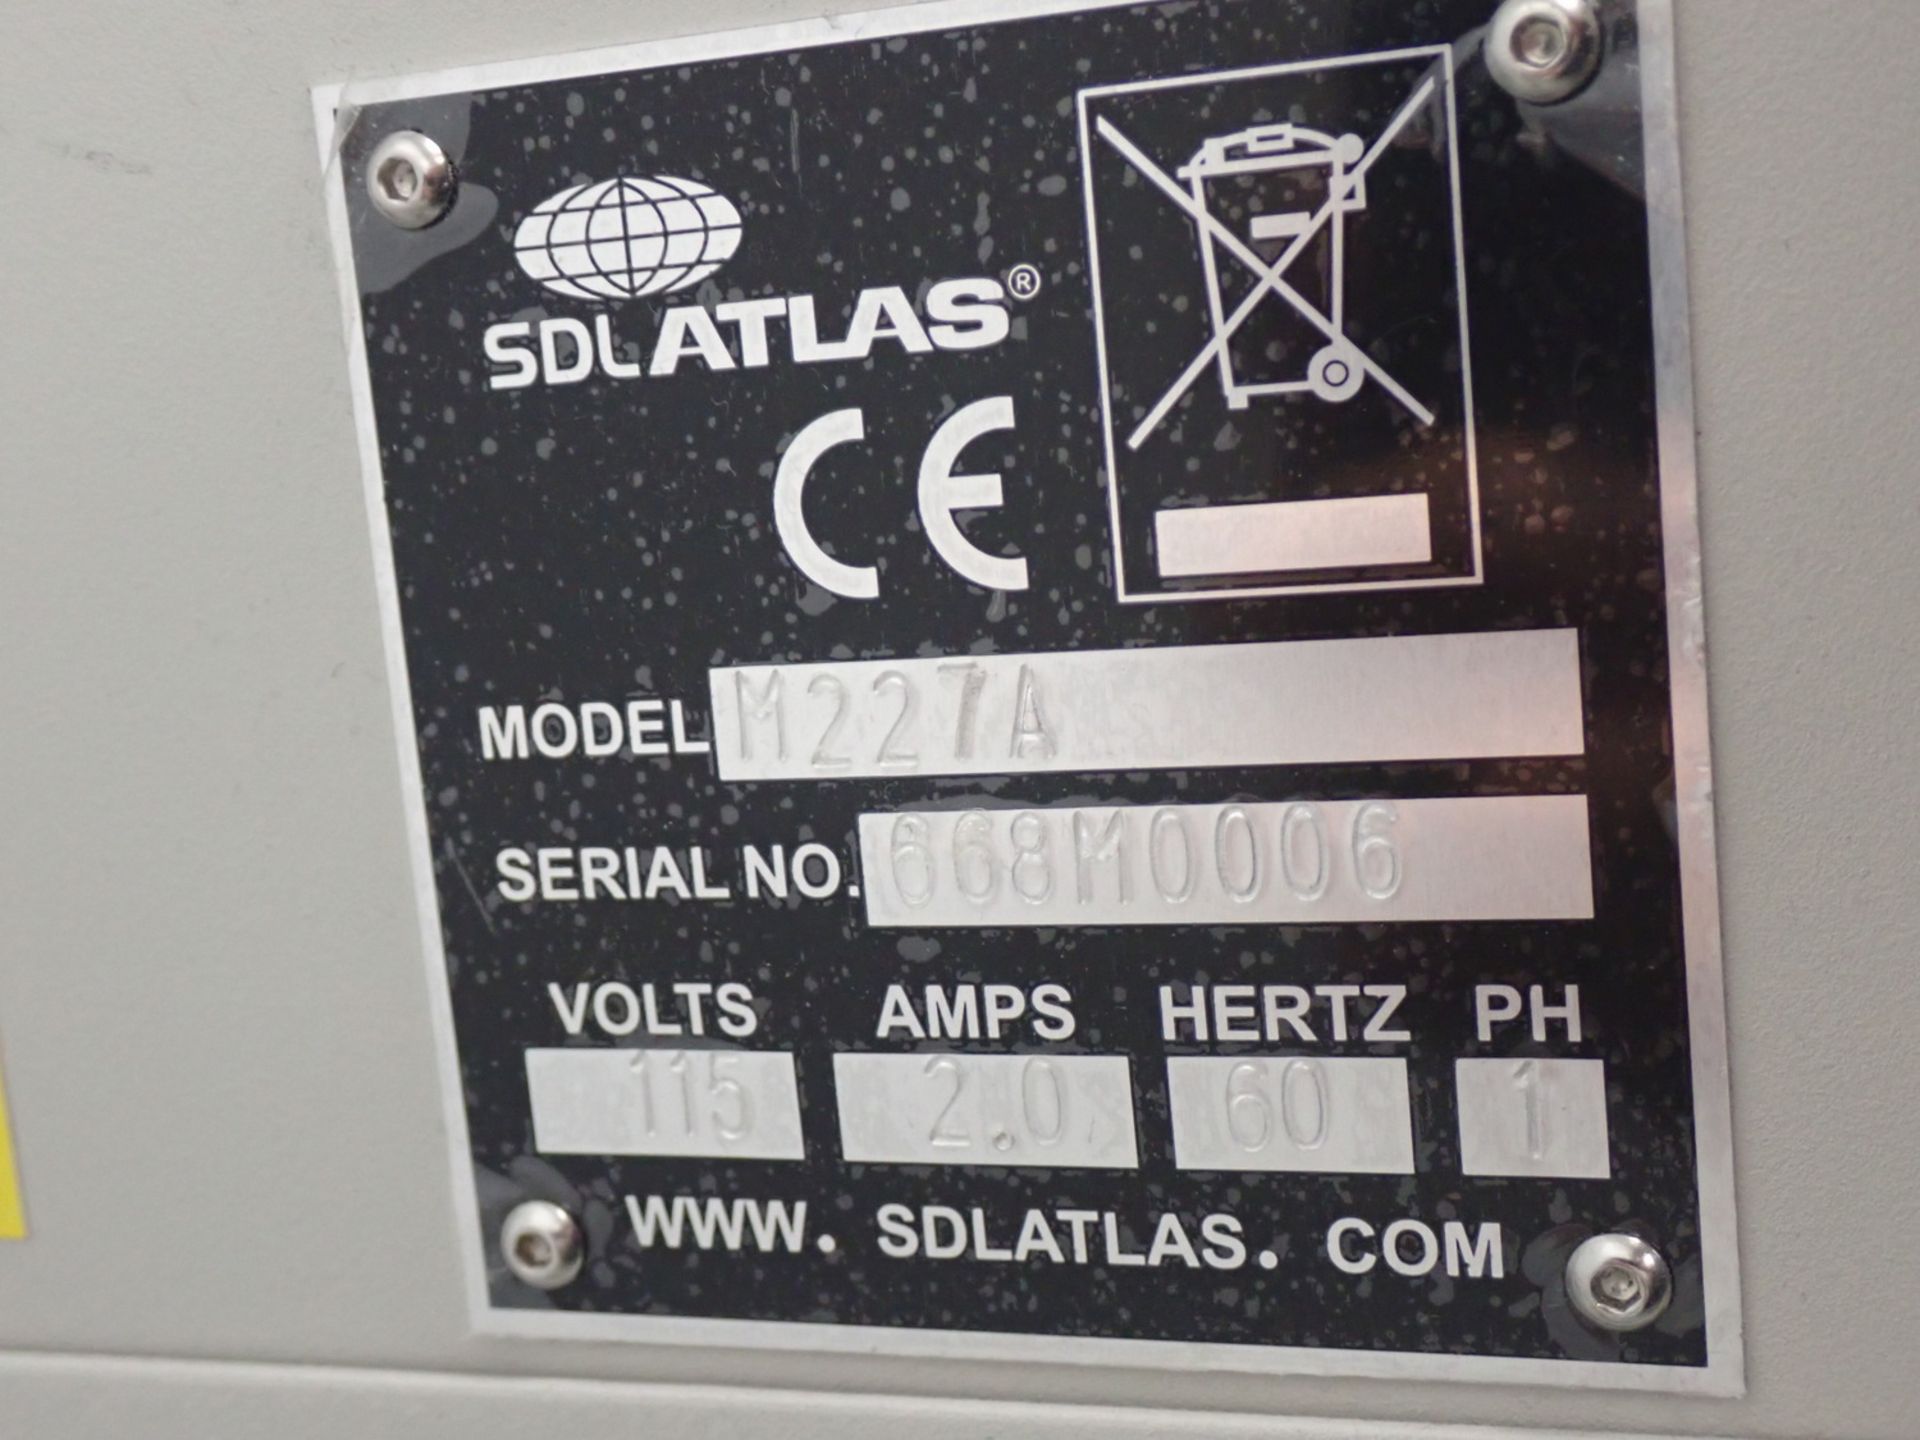 SDL ATLAS M227 ICI PILLING & SNAGGING TESTER - Image 5 of 5